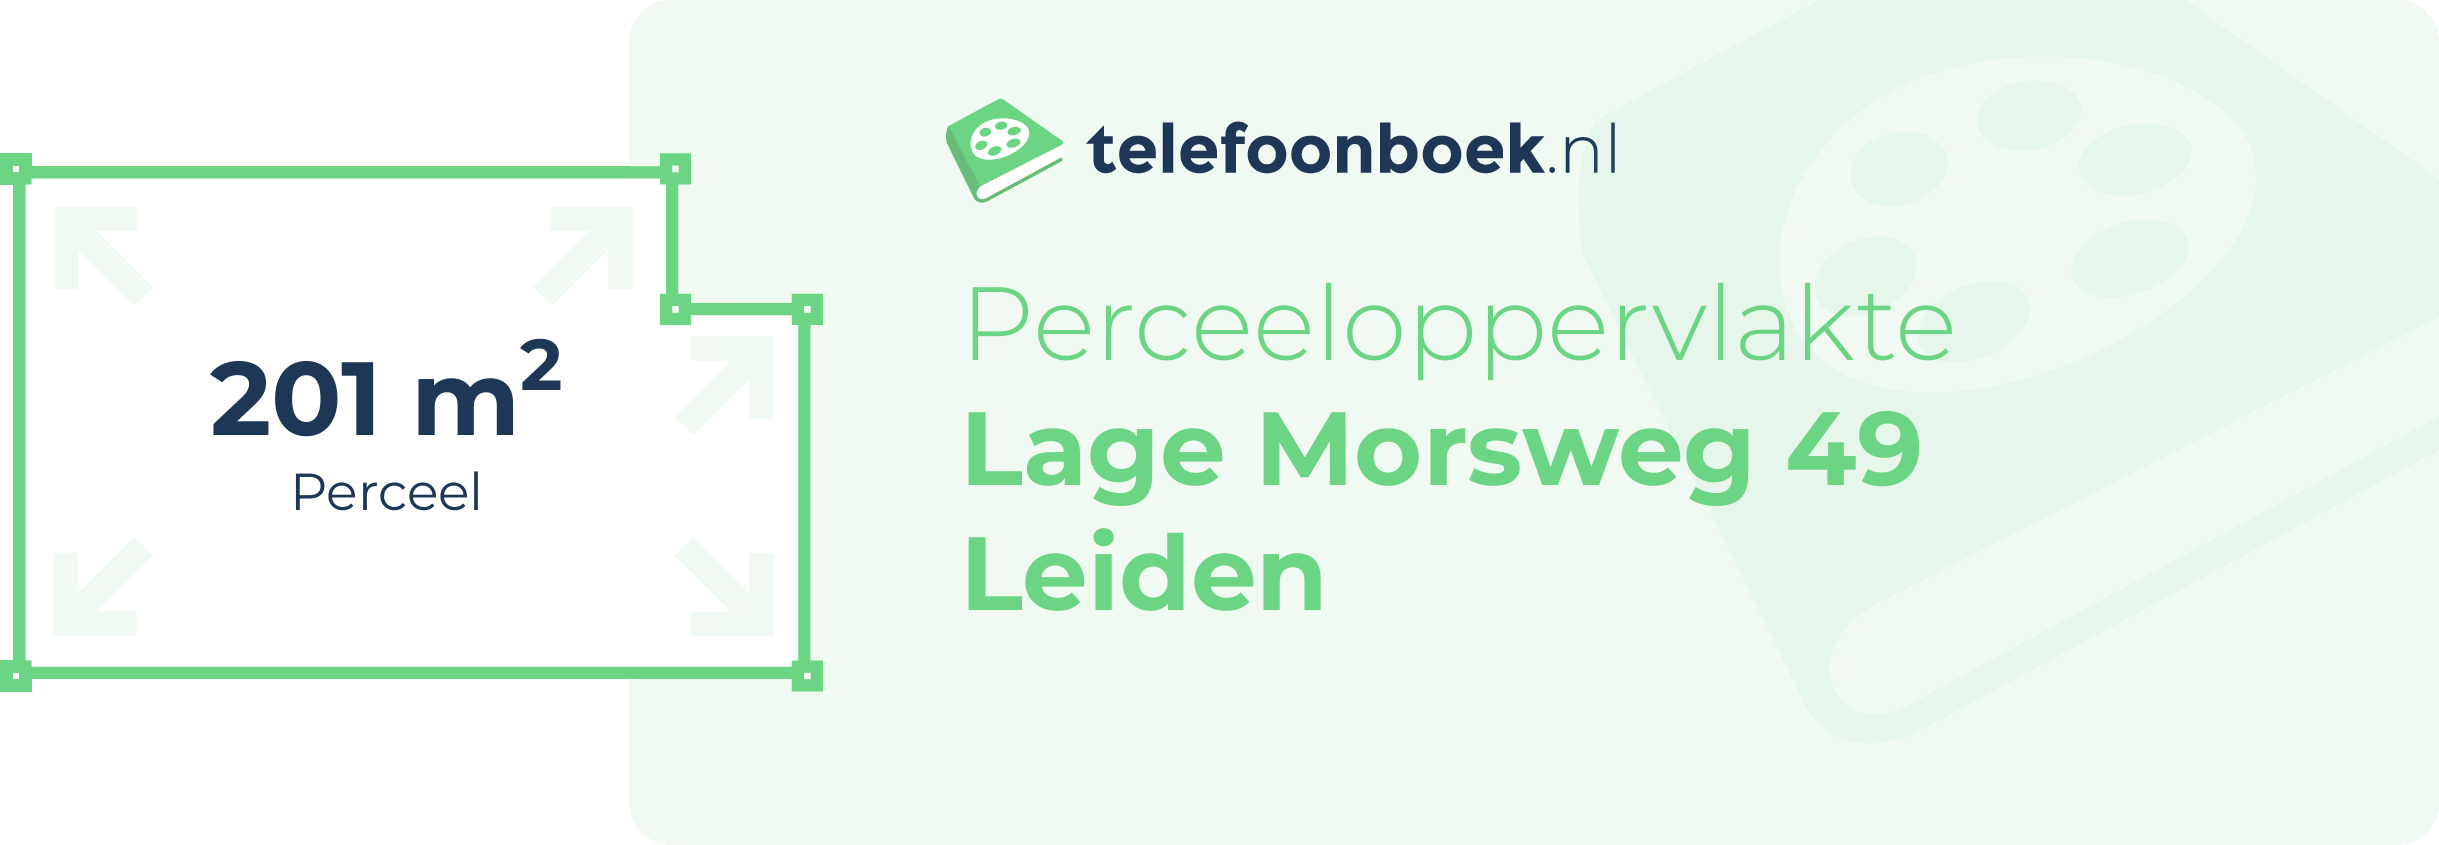 Perceeloppervlakte Lage Morsweg 49 Leiden